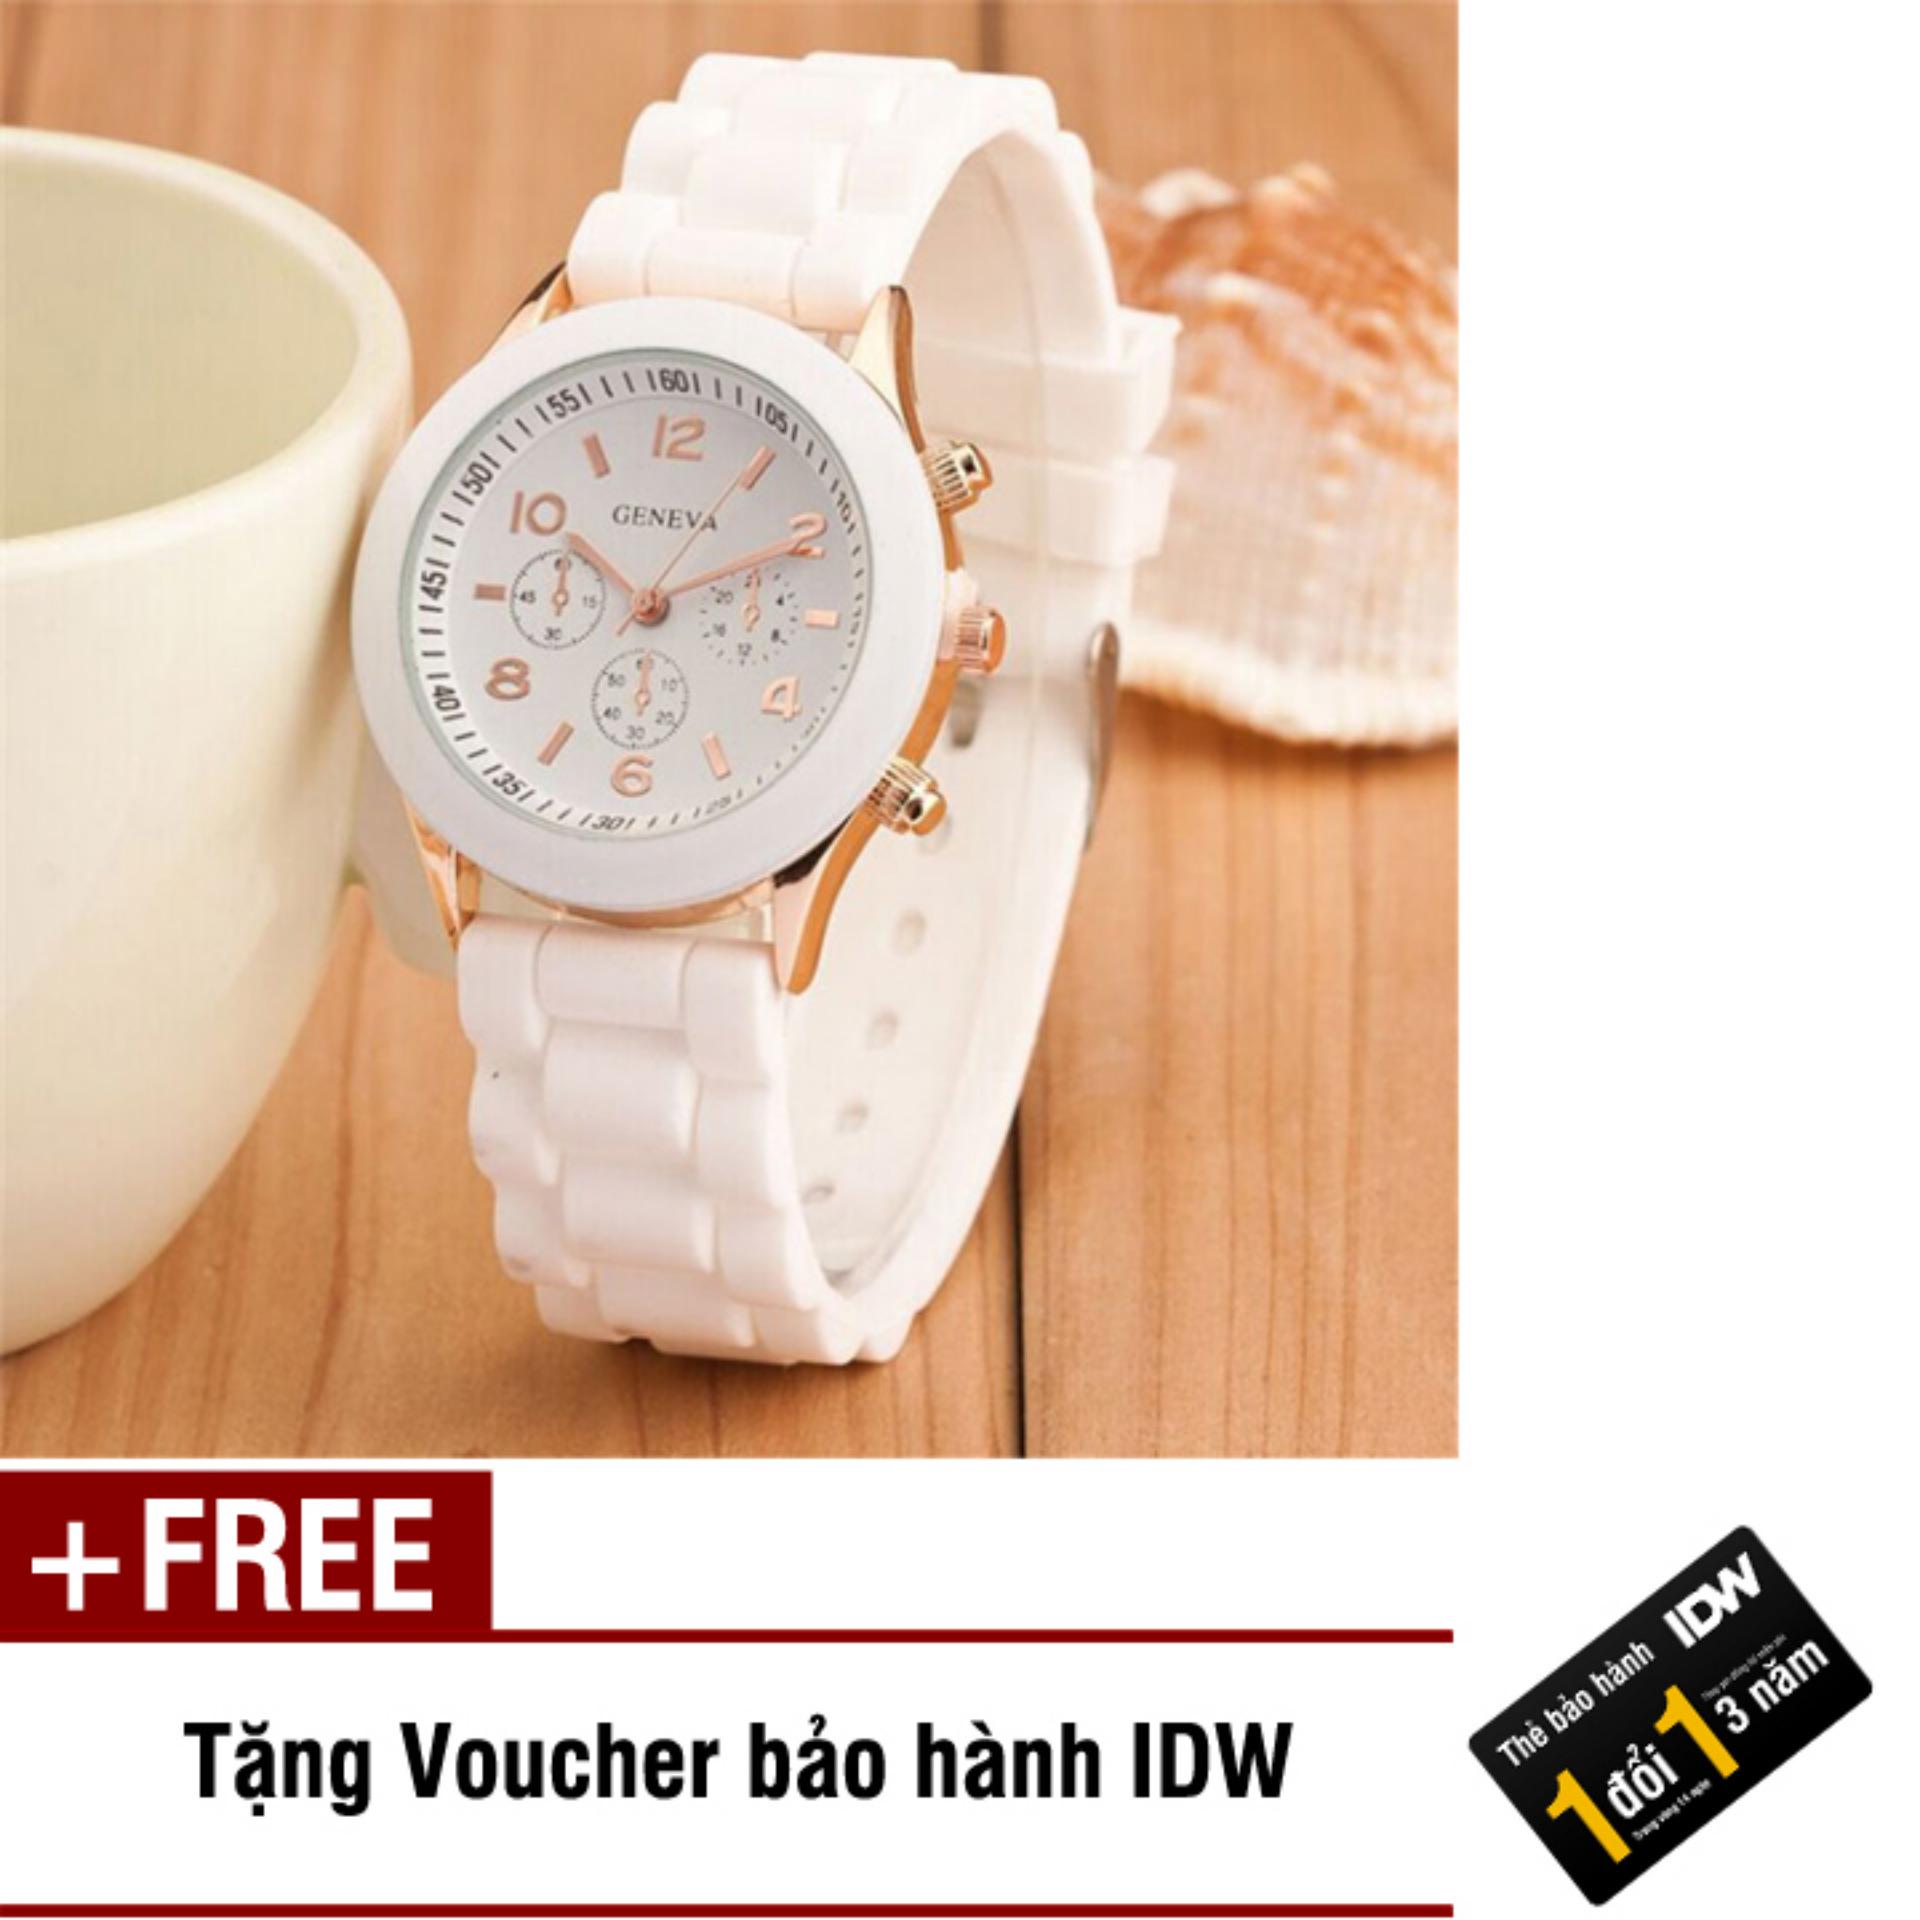 Đồng hồ nữ dây silicon thời trang Geneva IDW 9002 (Mặt trắng) + Tặng kèm voucher bảo hành IDW